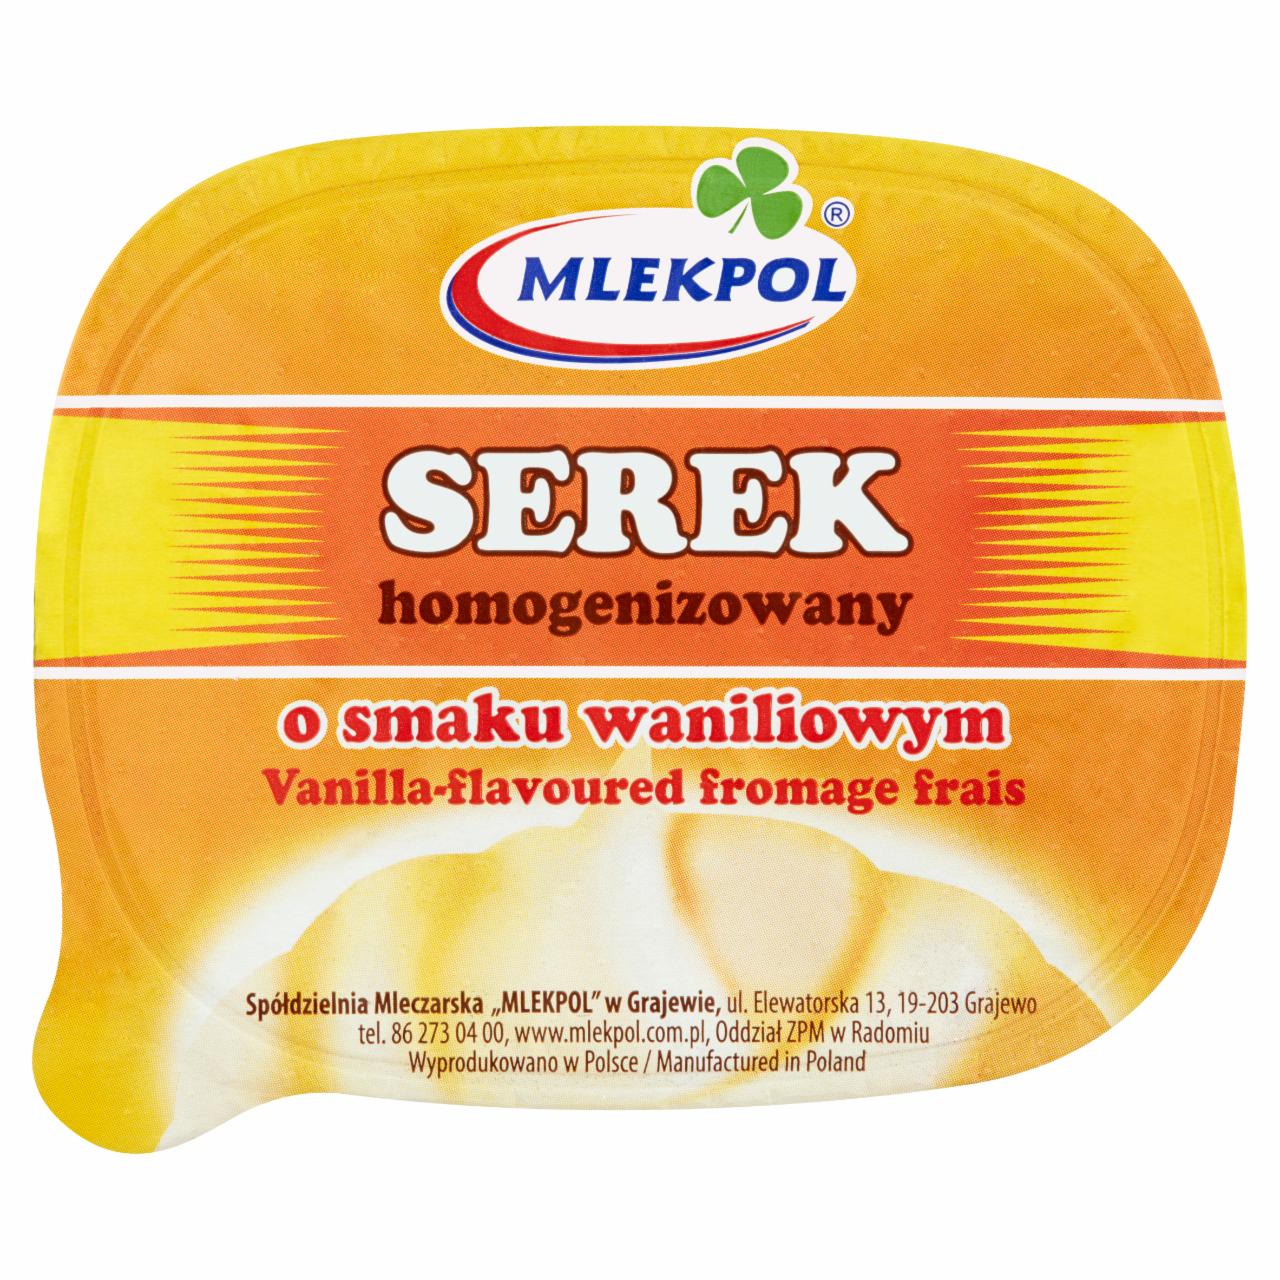 Zdjęcia - Mlekpol Serek homogenizowany o smaku waniliowym 140 g